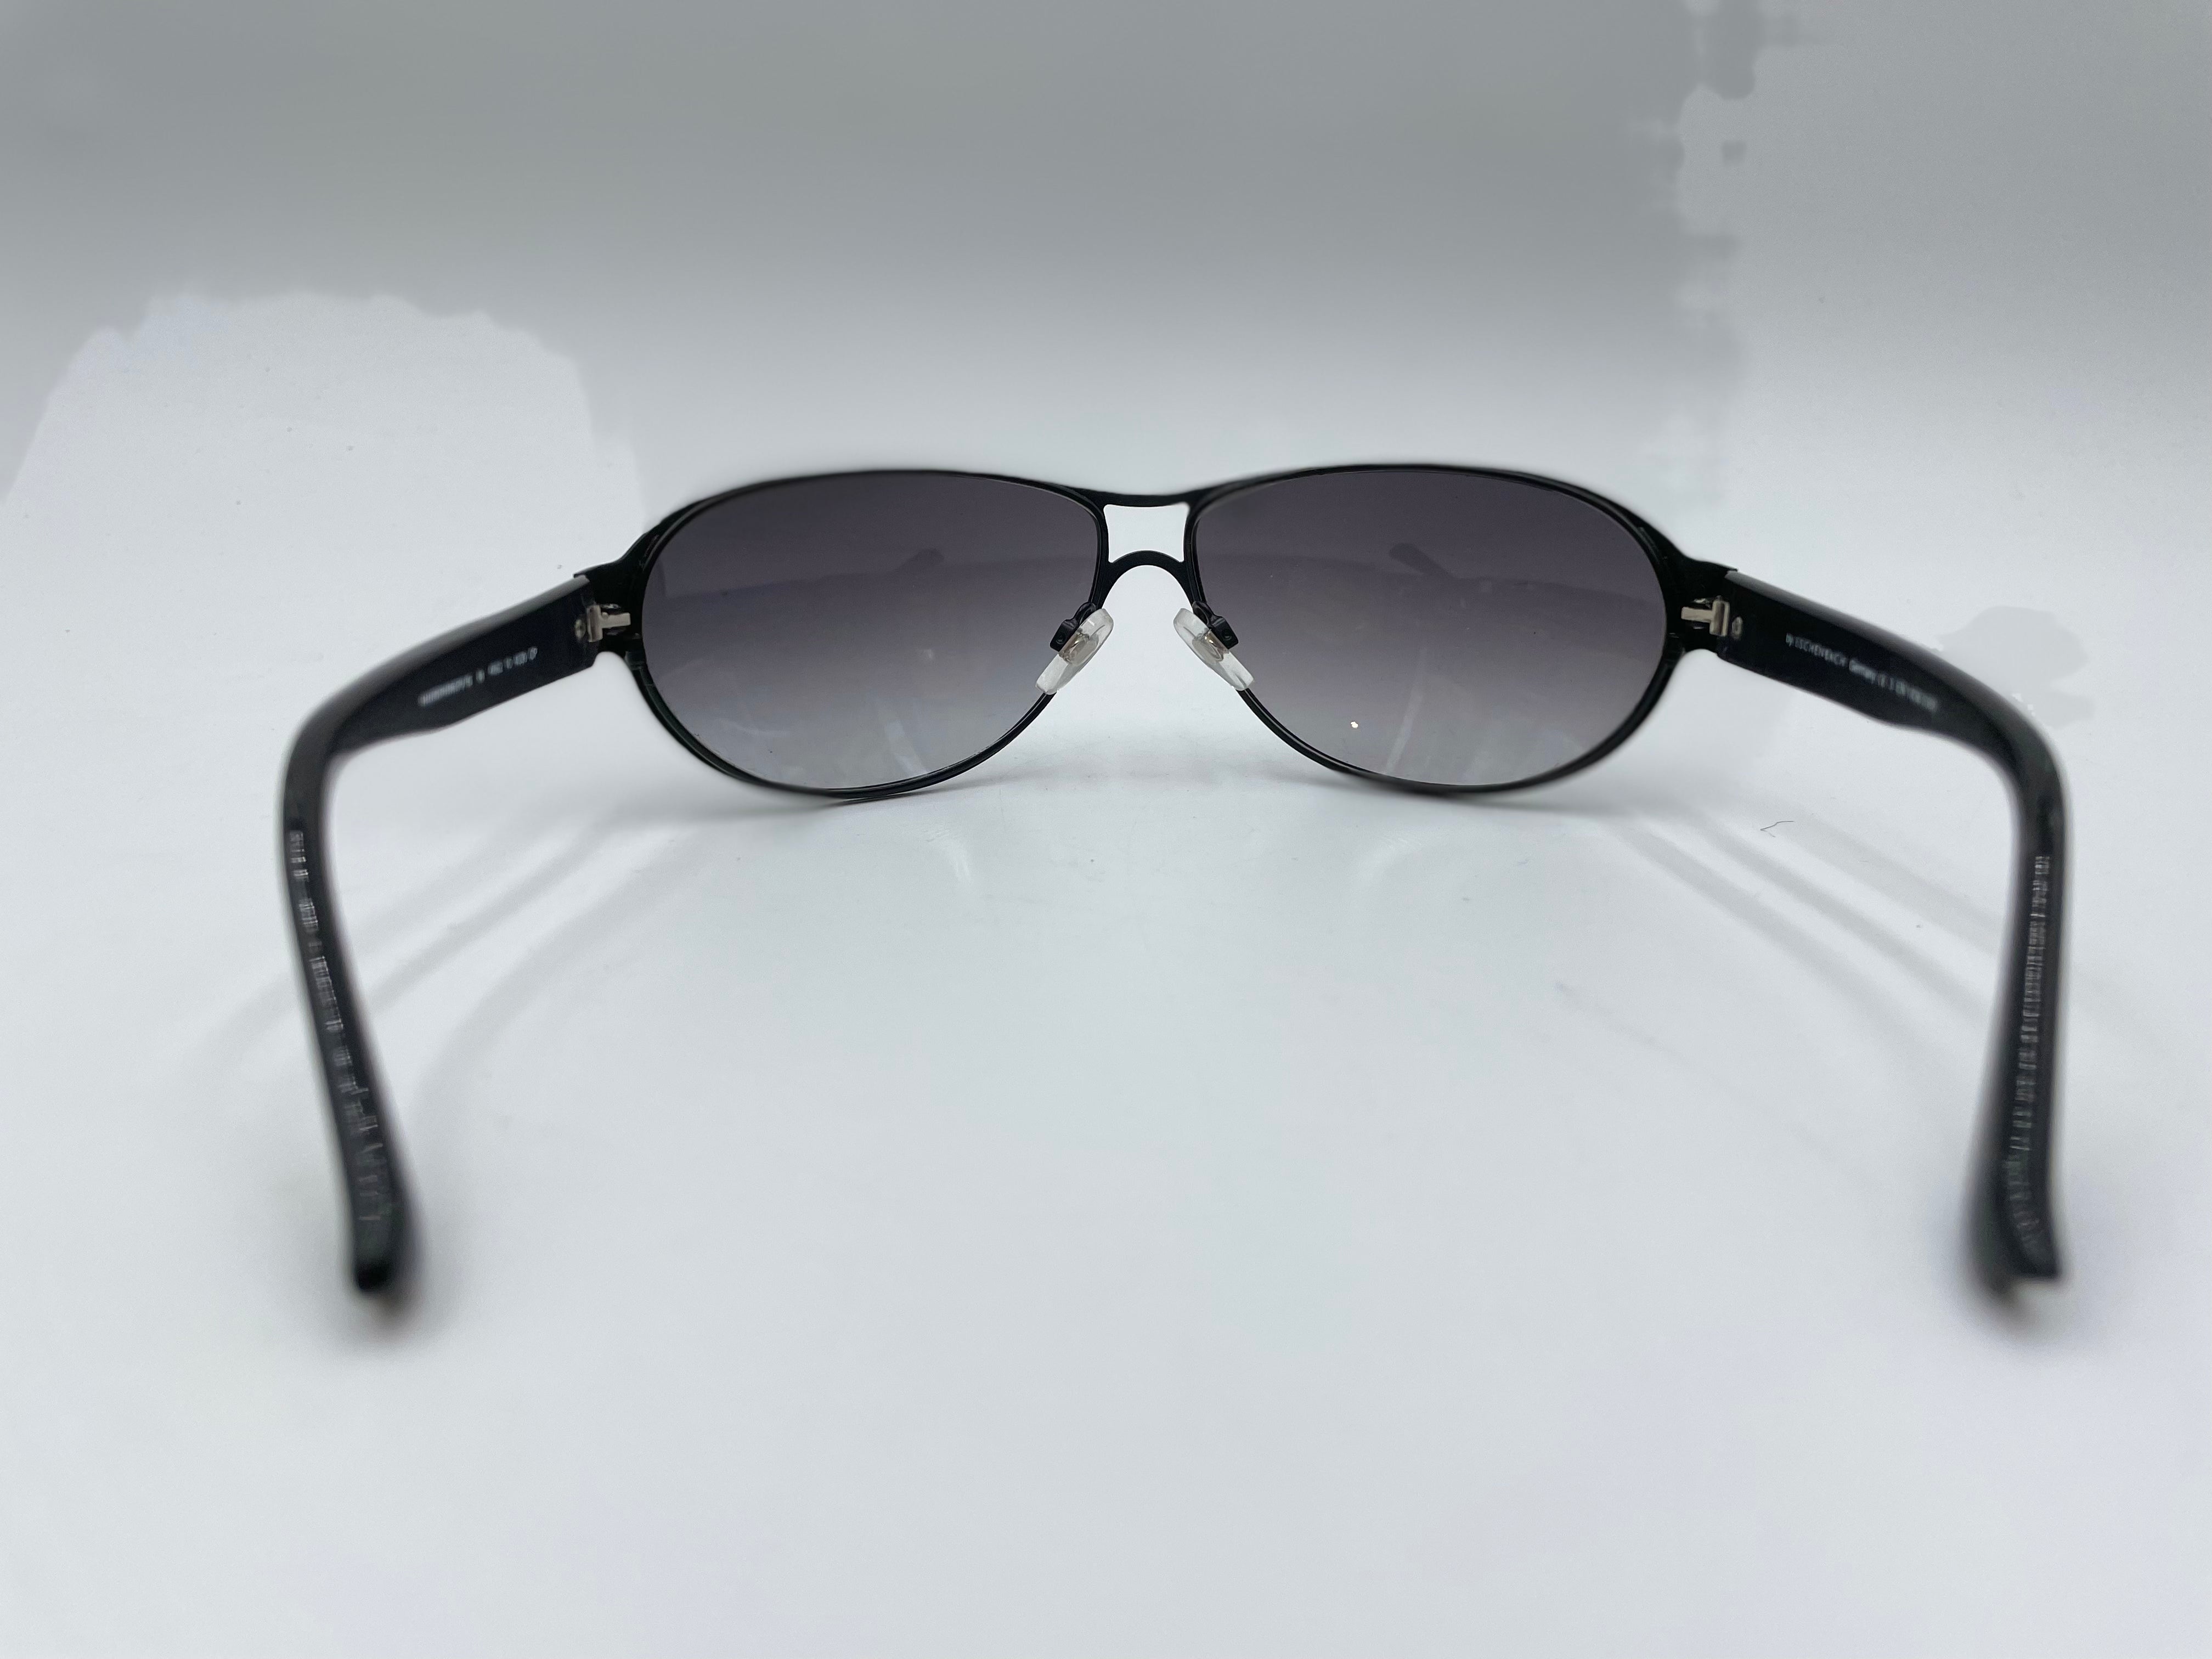 Eschenbach/Humphrey Sunglasses